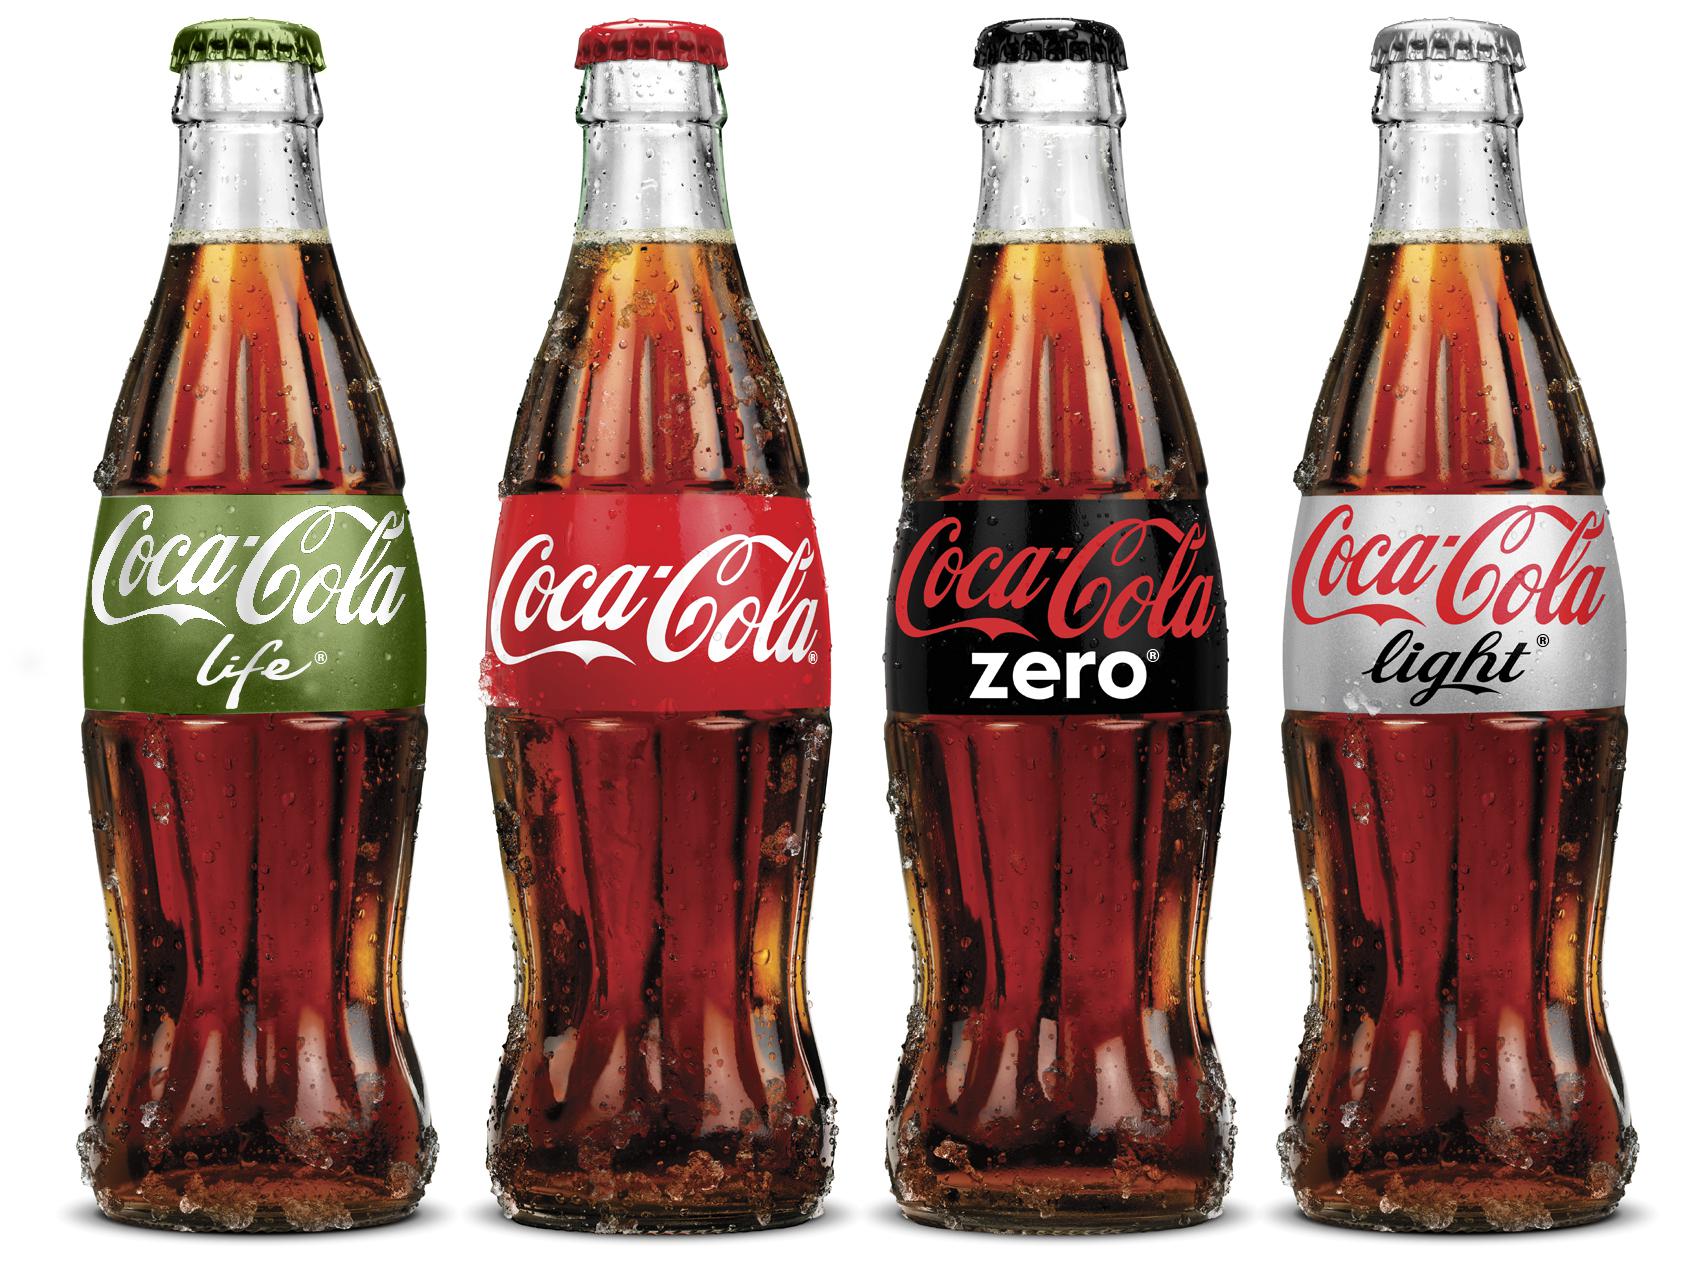 Πώς ο κορονοϊός μπορεί να προκαλέσει έλλειψη στην Coca-Cola διαίτης;